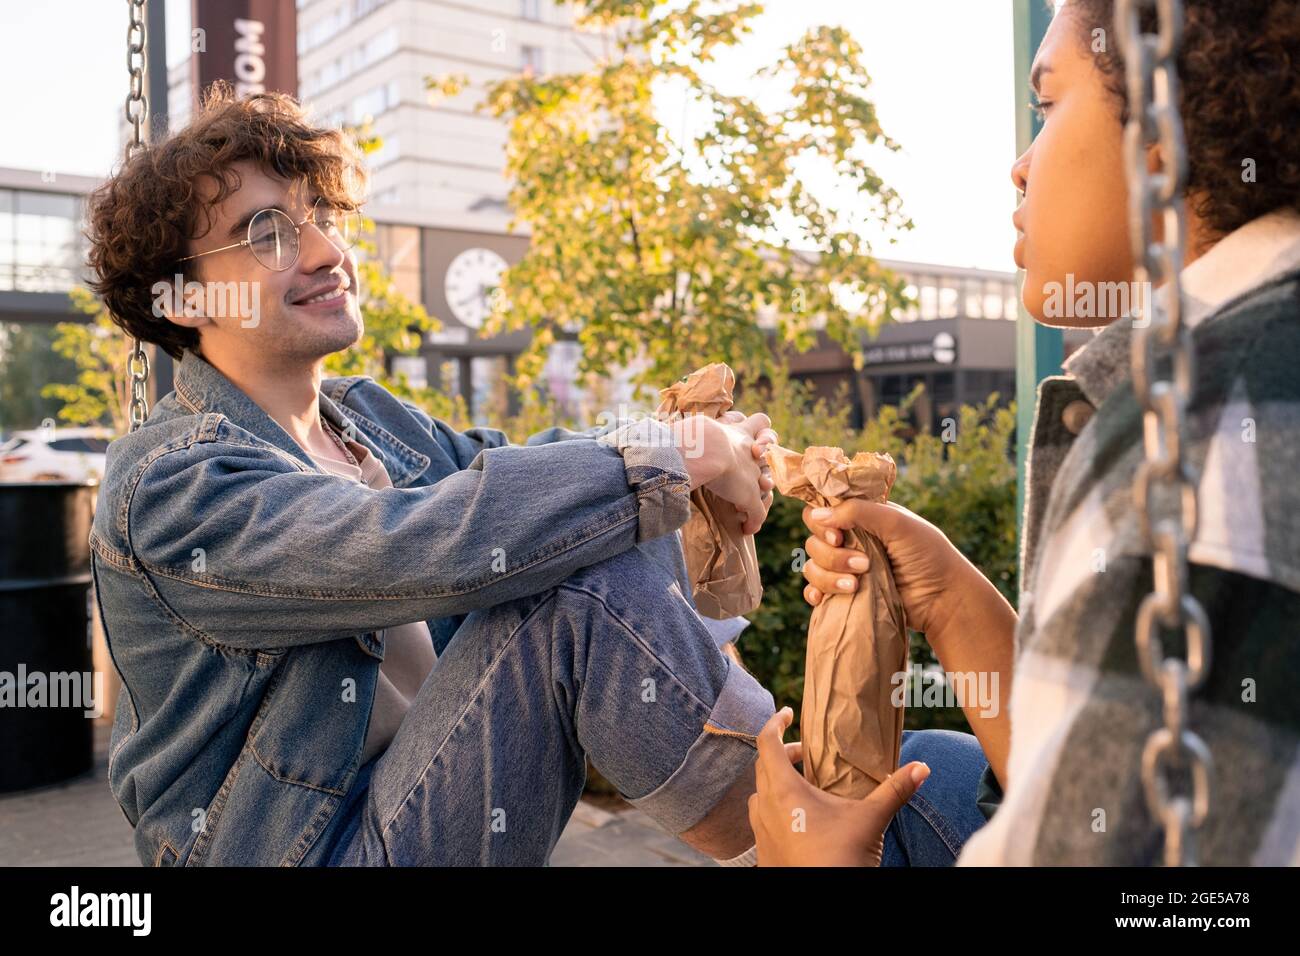 Lächelnder Teenager mit Flasche, der seine Freundin während der Diskussion im Freien ansieht Stockfoto